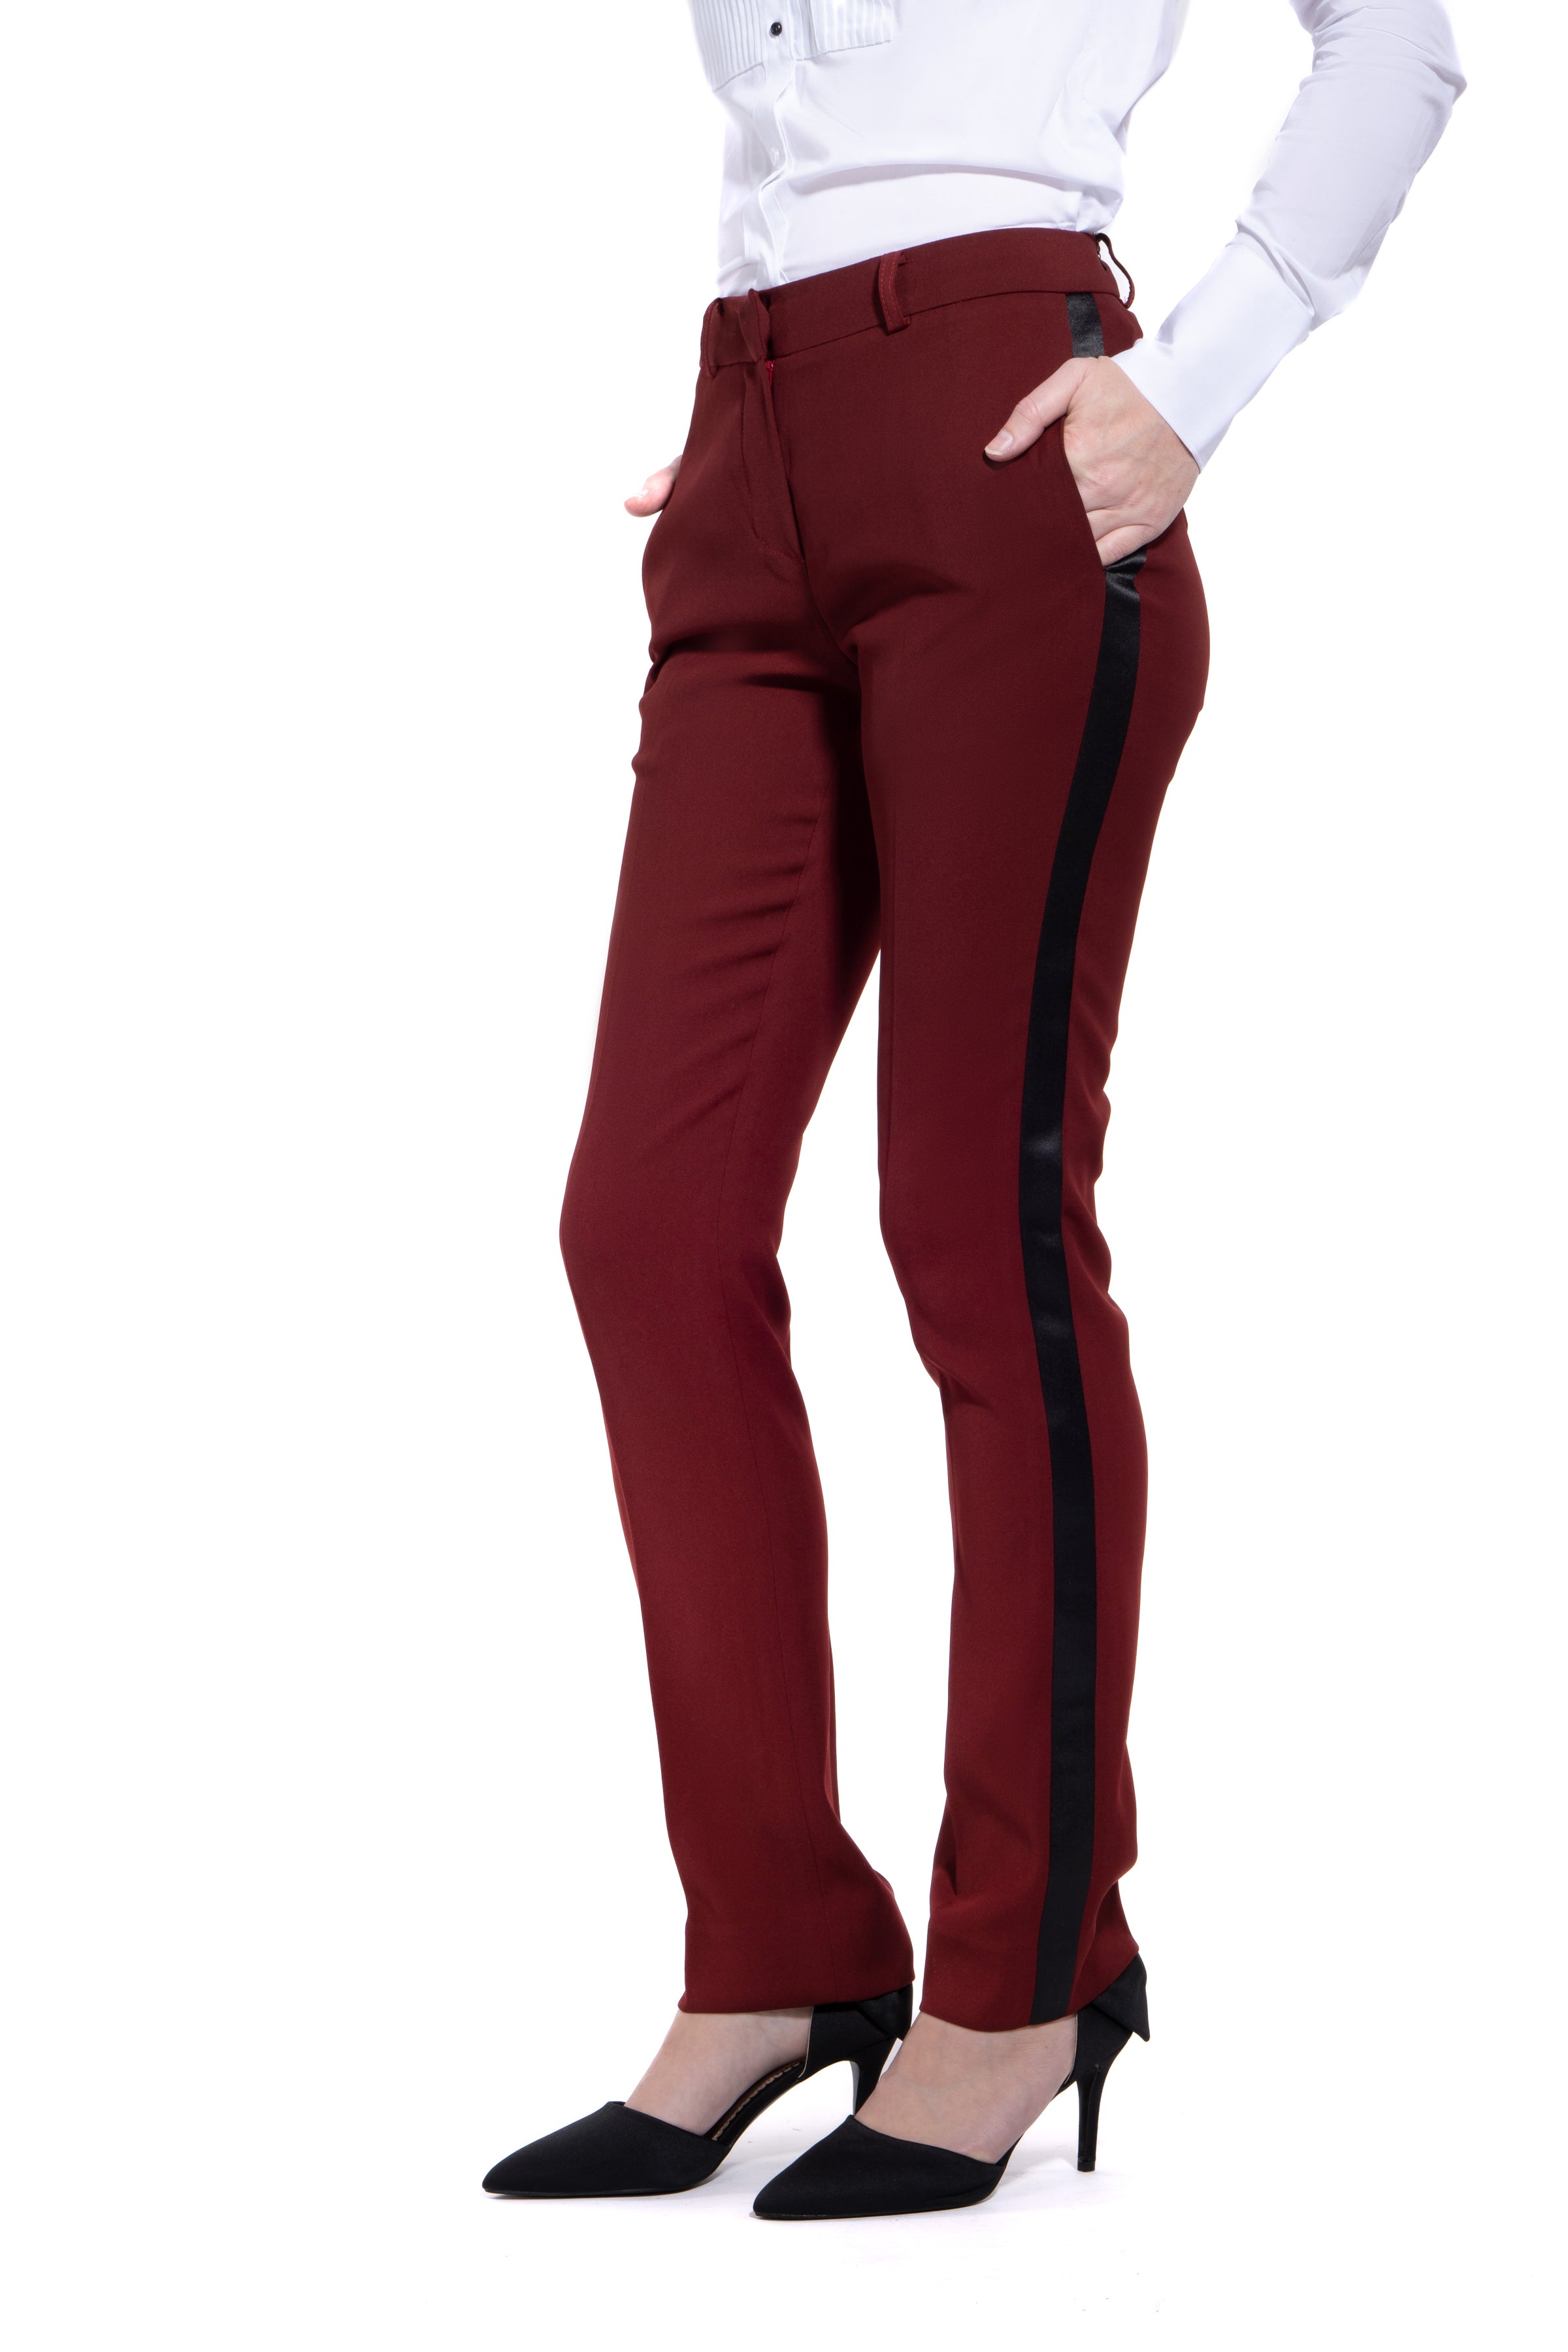 Burgundy Ultra Slim Fit Tuxedo Pants for Women – LITTLE BLACK TUX